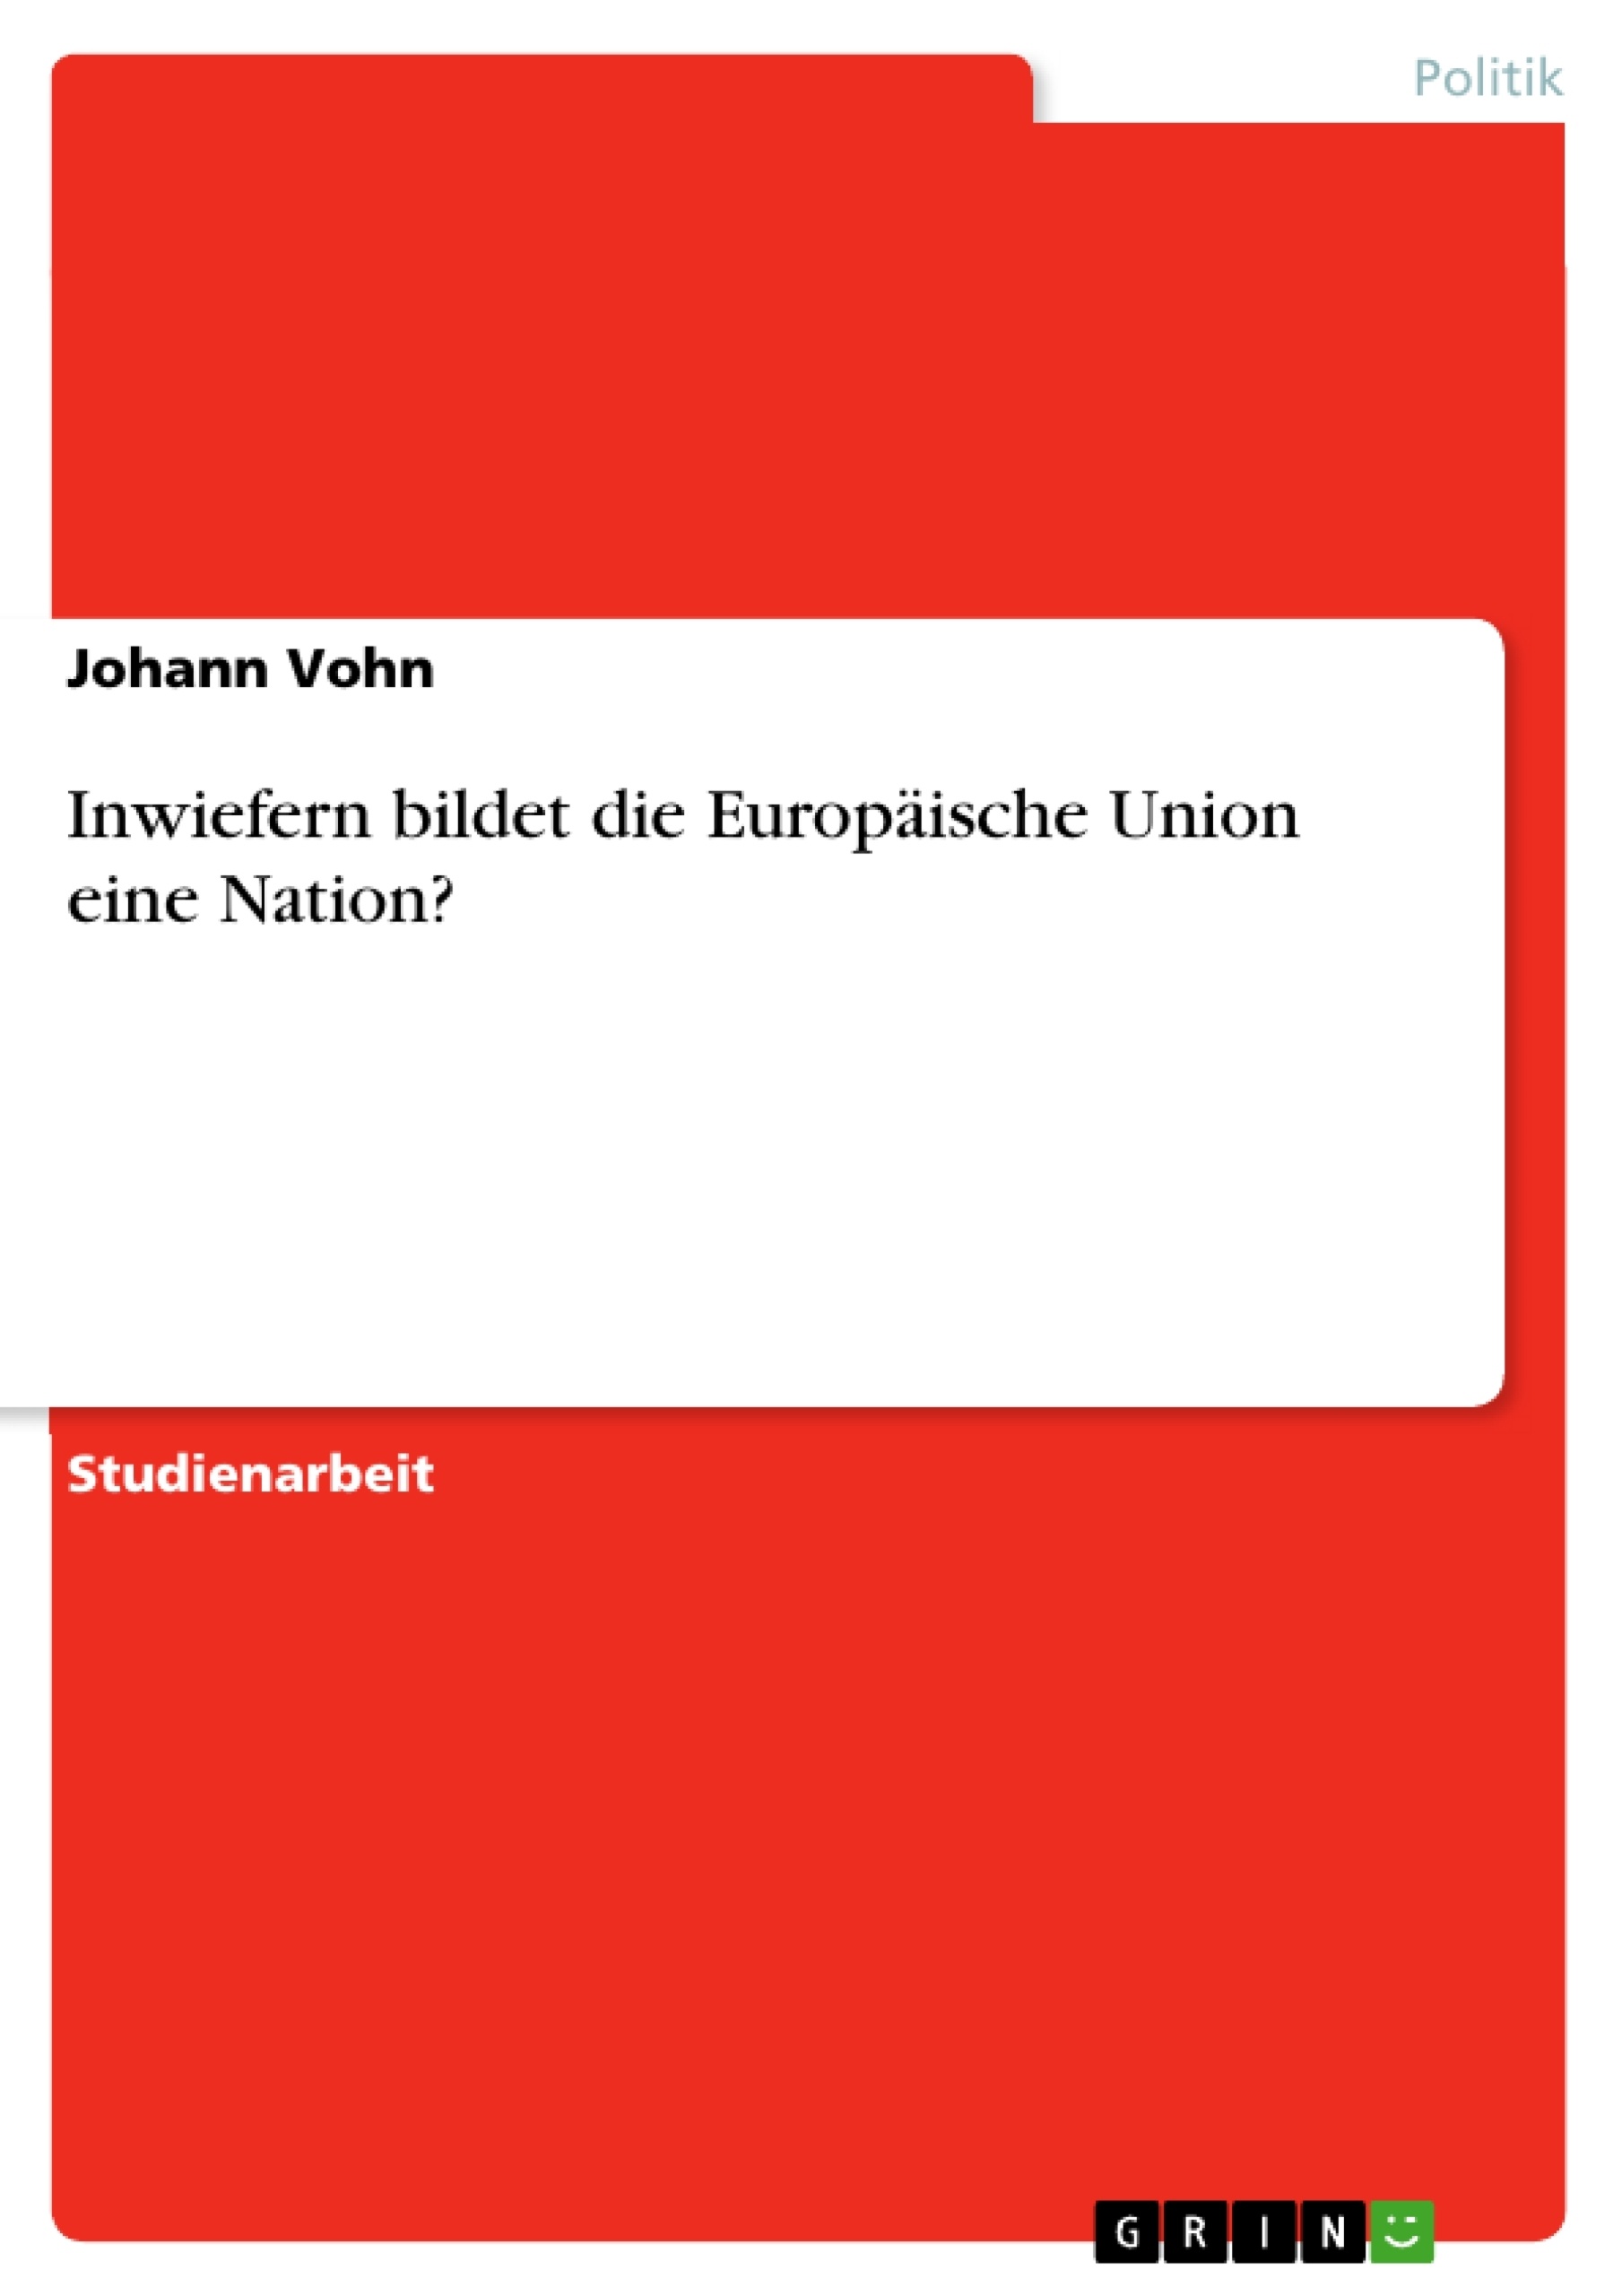 Título: Inwiefern bildet die Europäische Union eine Nation?